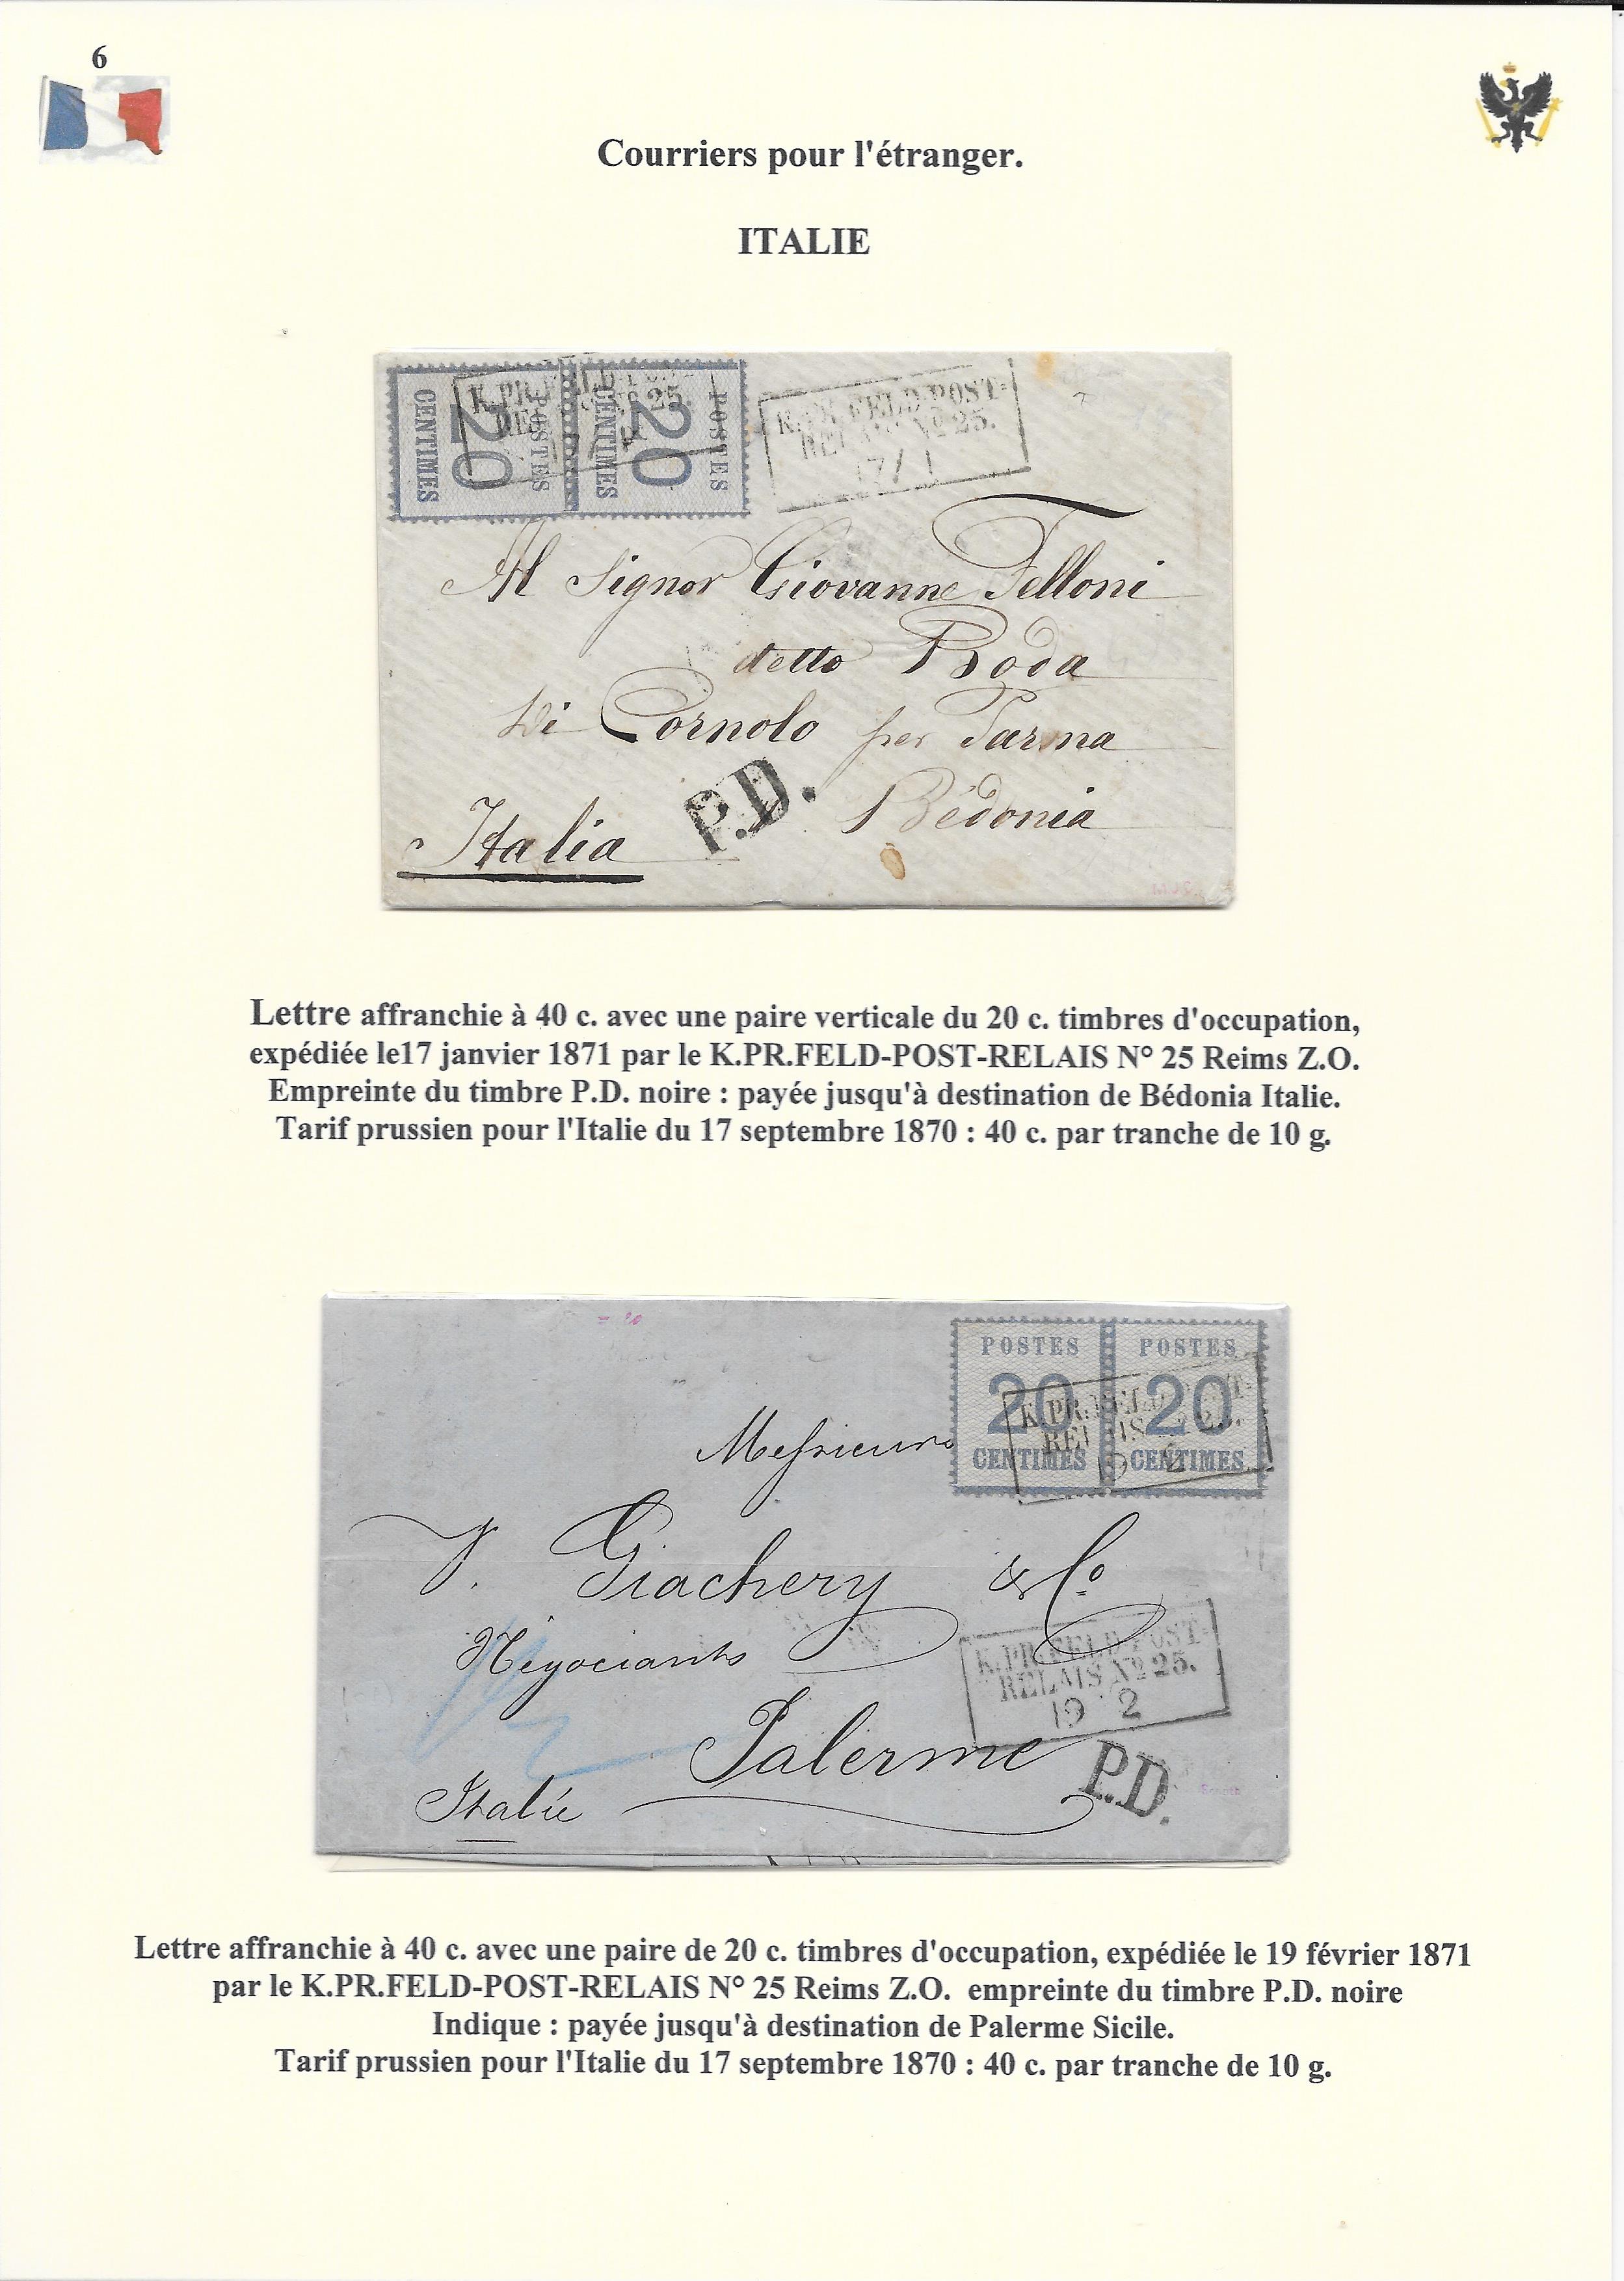 Occupation Prussienne dans la Marne 1870-1872 : Cons��quences sur les relations postales p. 70